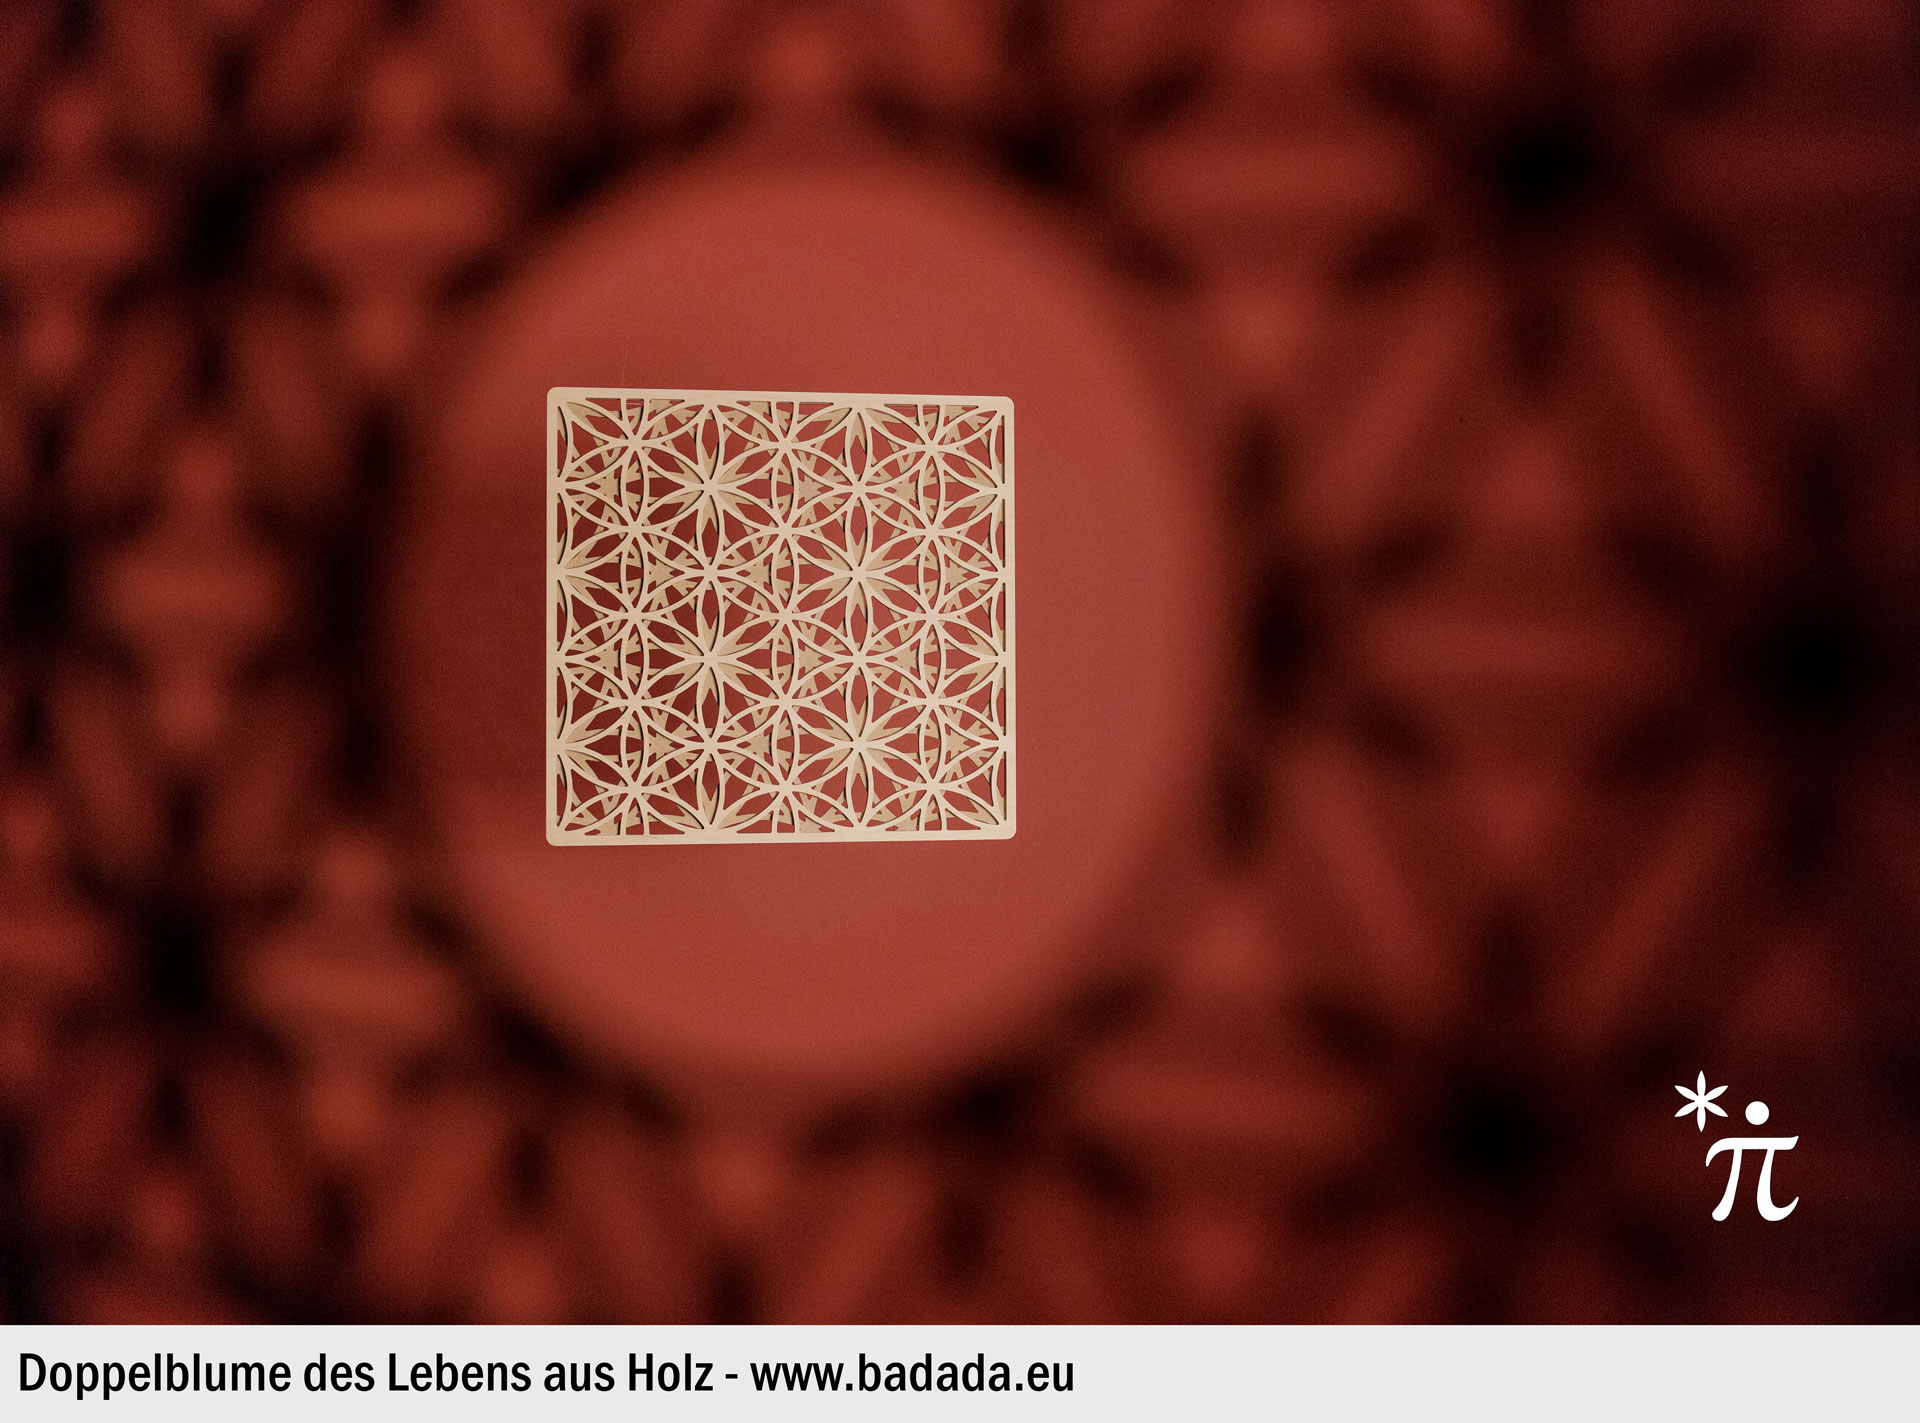 Doppel Blume des Lebens aus Holz Frontal vor rotem Hintergrund